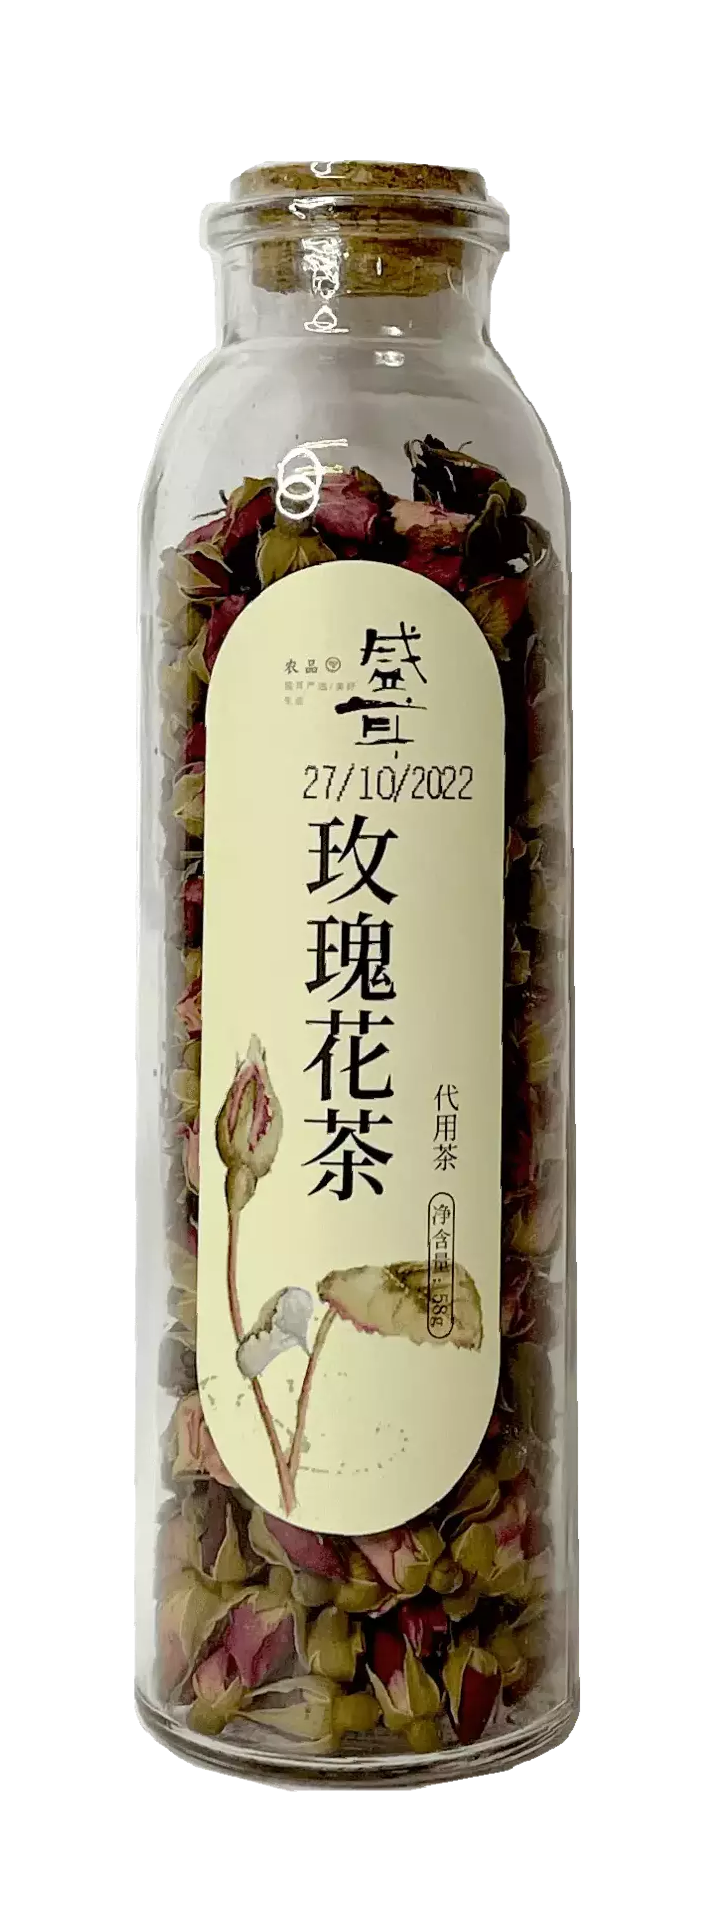 保质期:2022.10.27 玫瑰花茶 58g 盛耳 中国